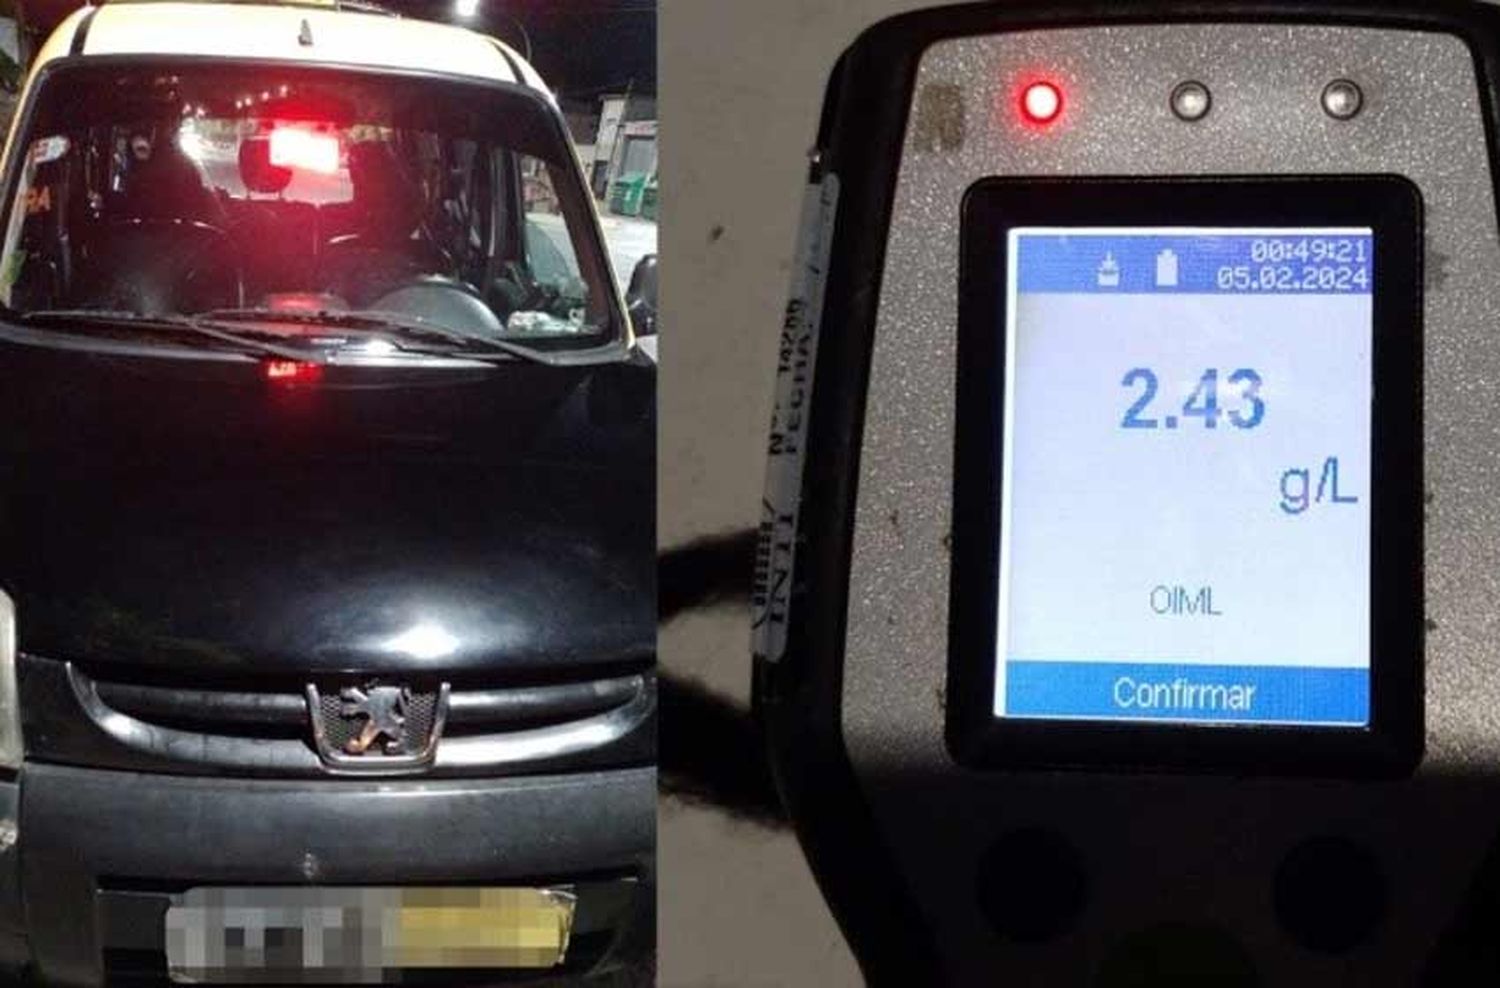 Insólito: un taxista dio 2,43 de alcoholemia y le retiraron la licencia de conducir